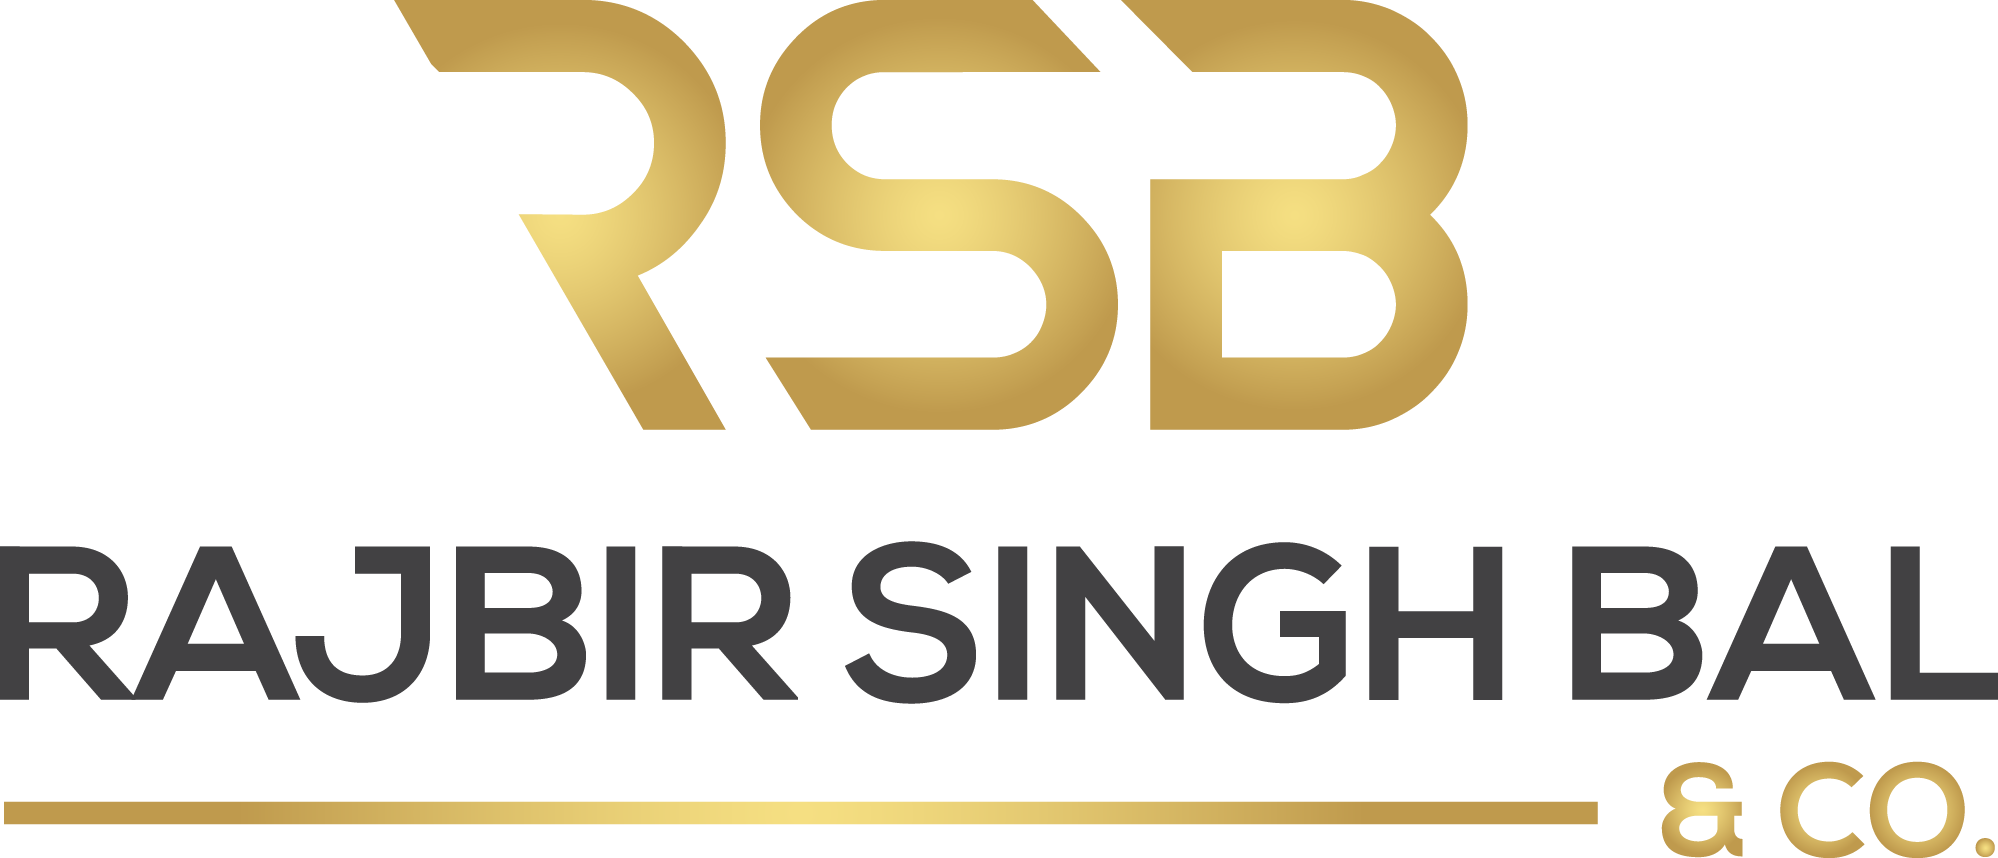 Rajbir Singh Bal & Co.